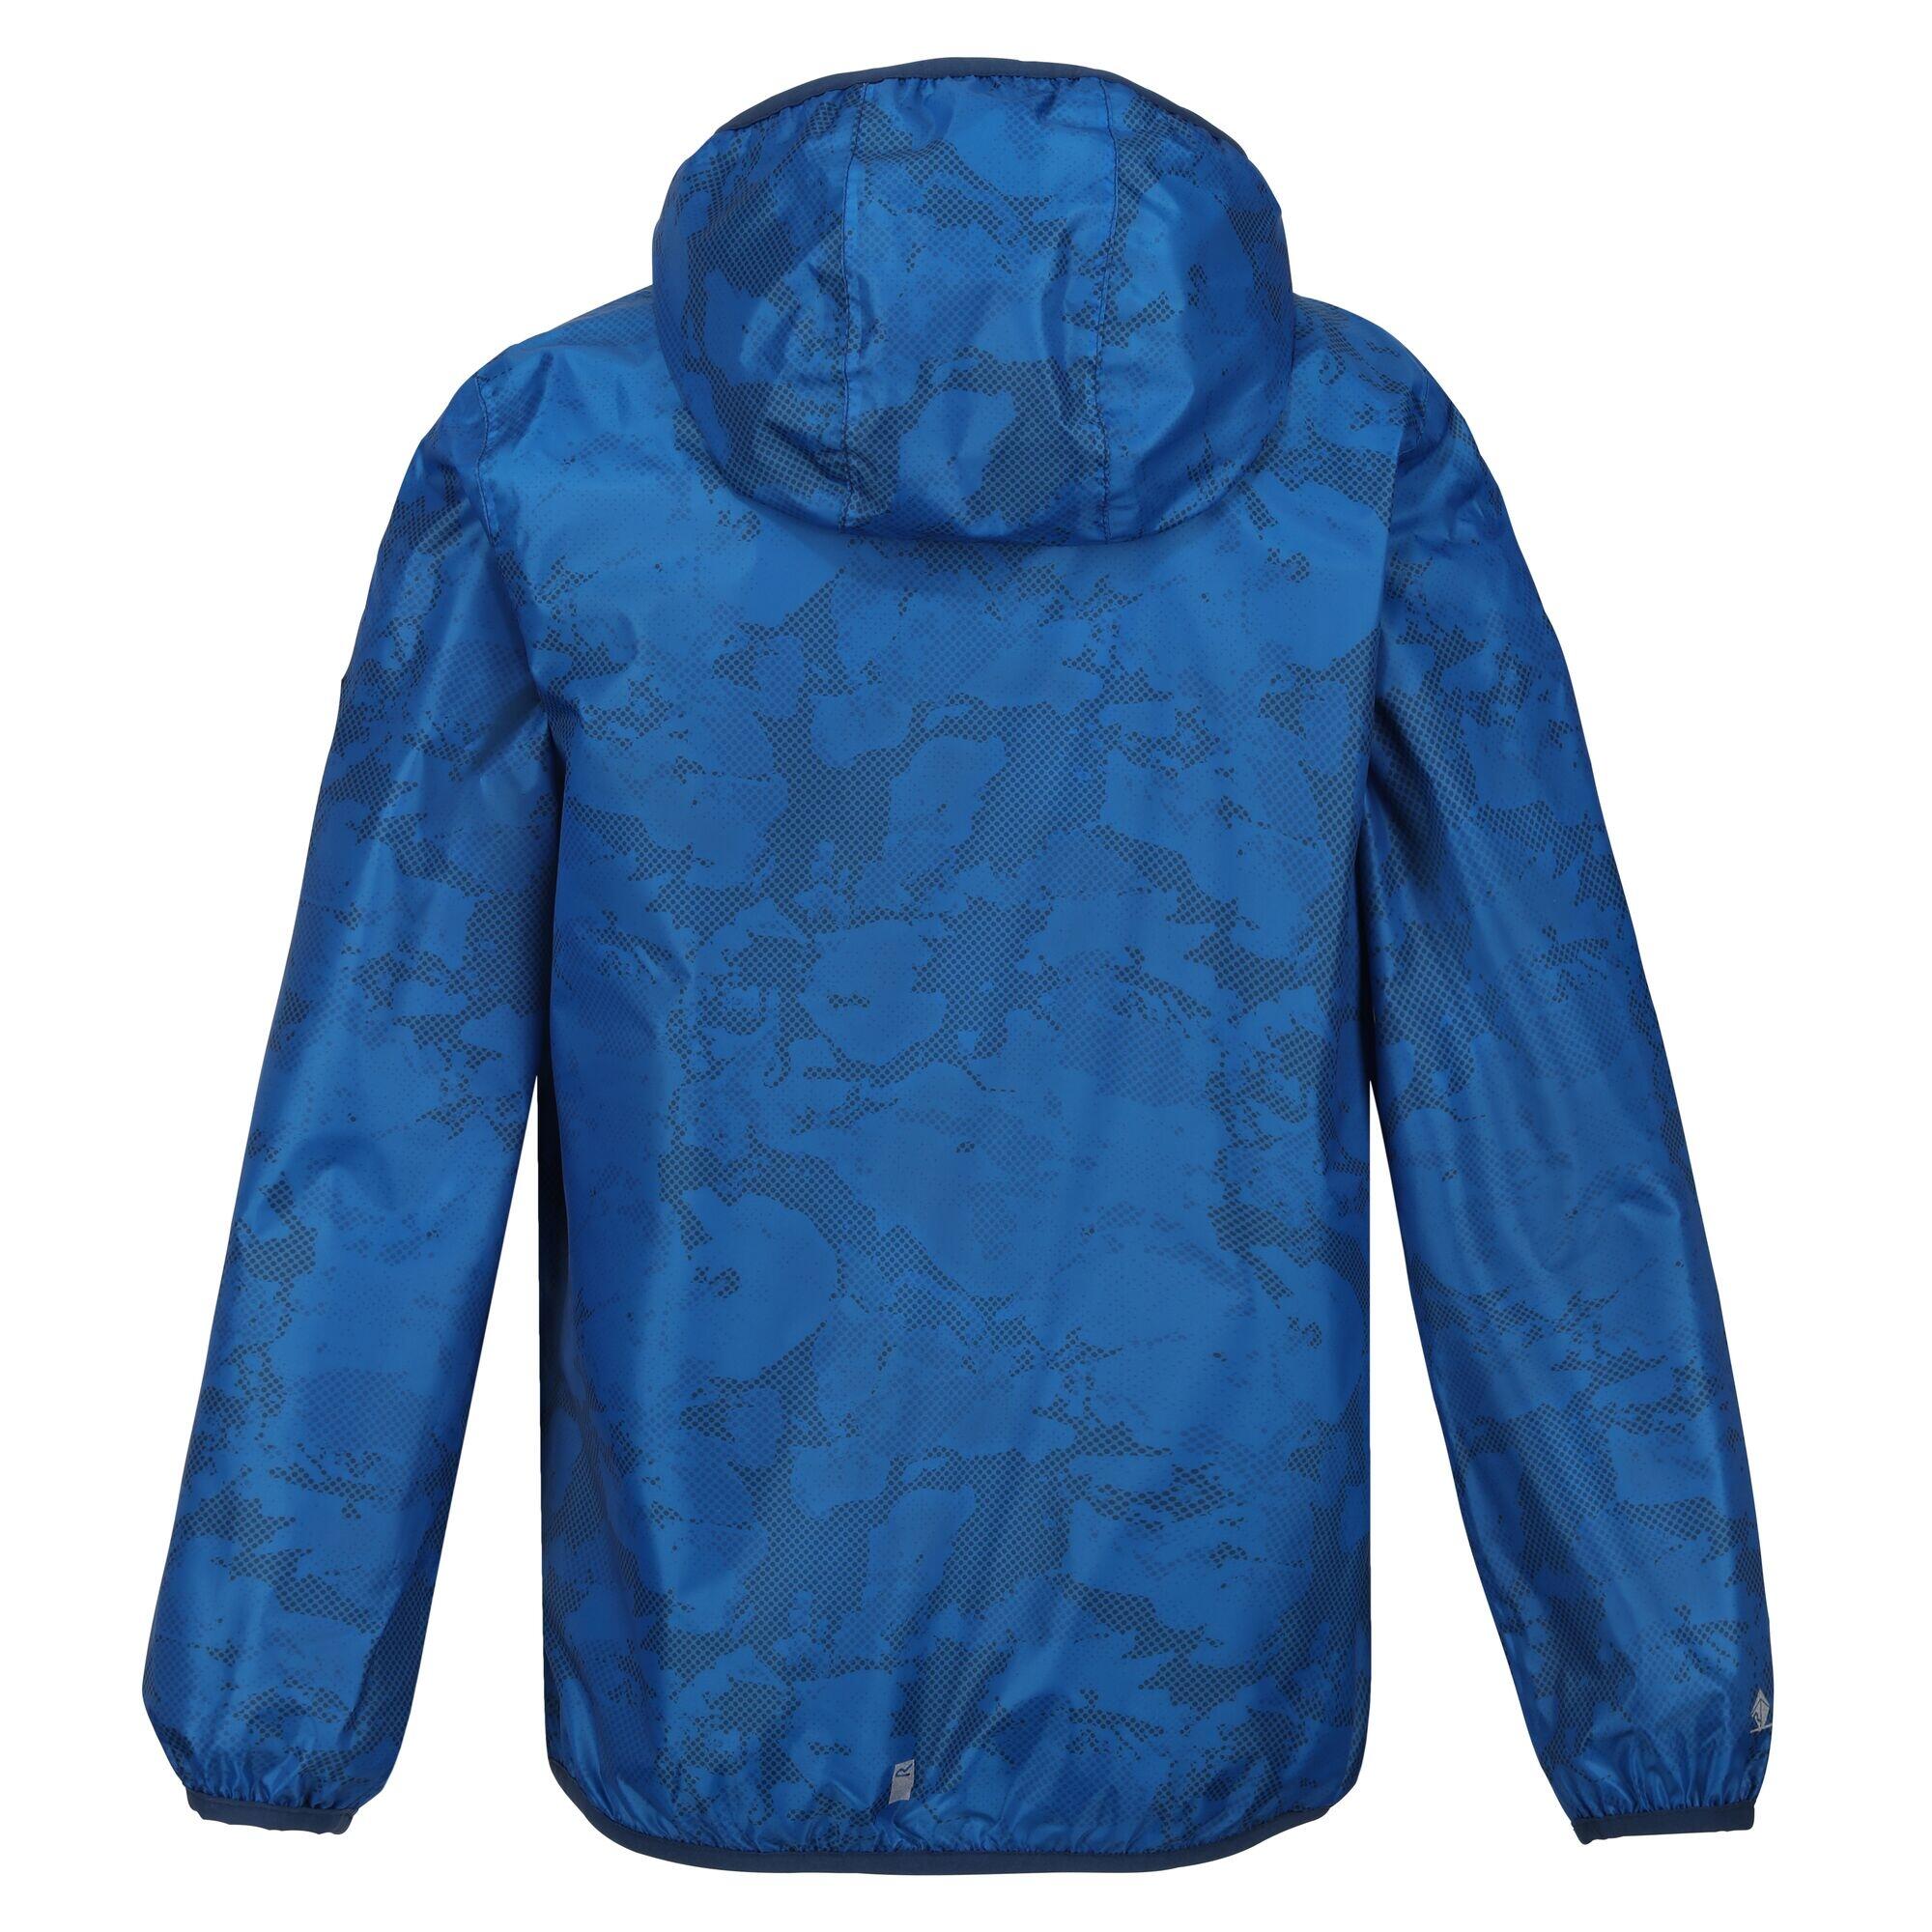 Childrens/Kids Lever Printed Packaway Waterproof Jacket (Indigo Blue) 2/5